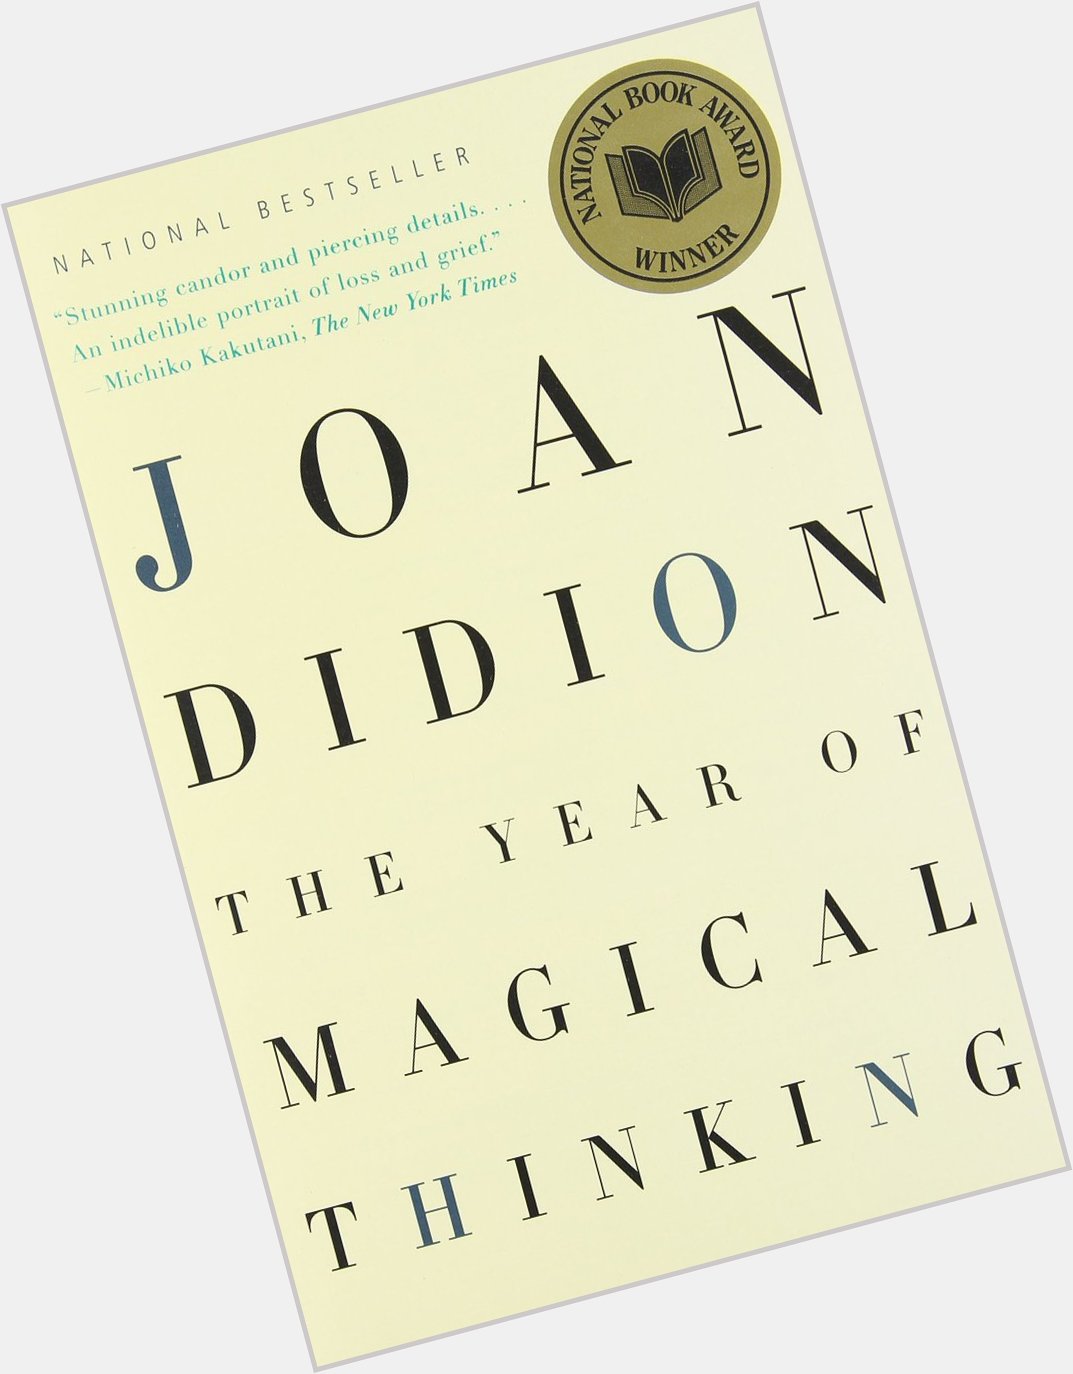 Happy birthday Joan Didion!  